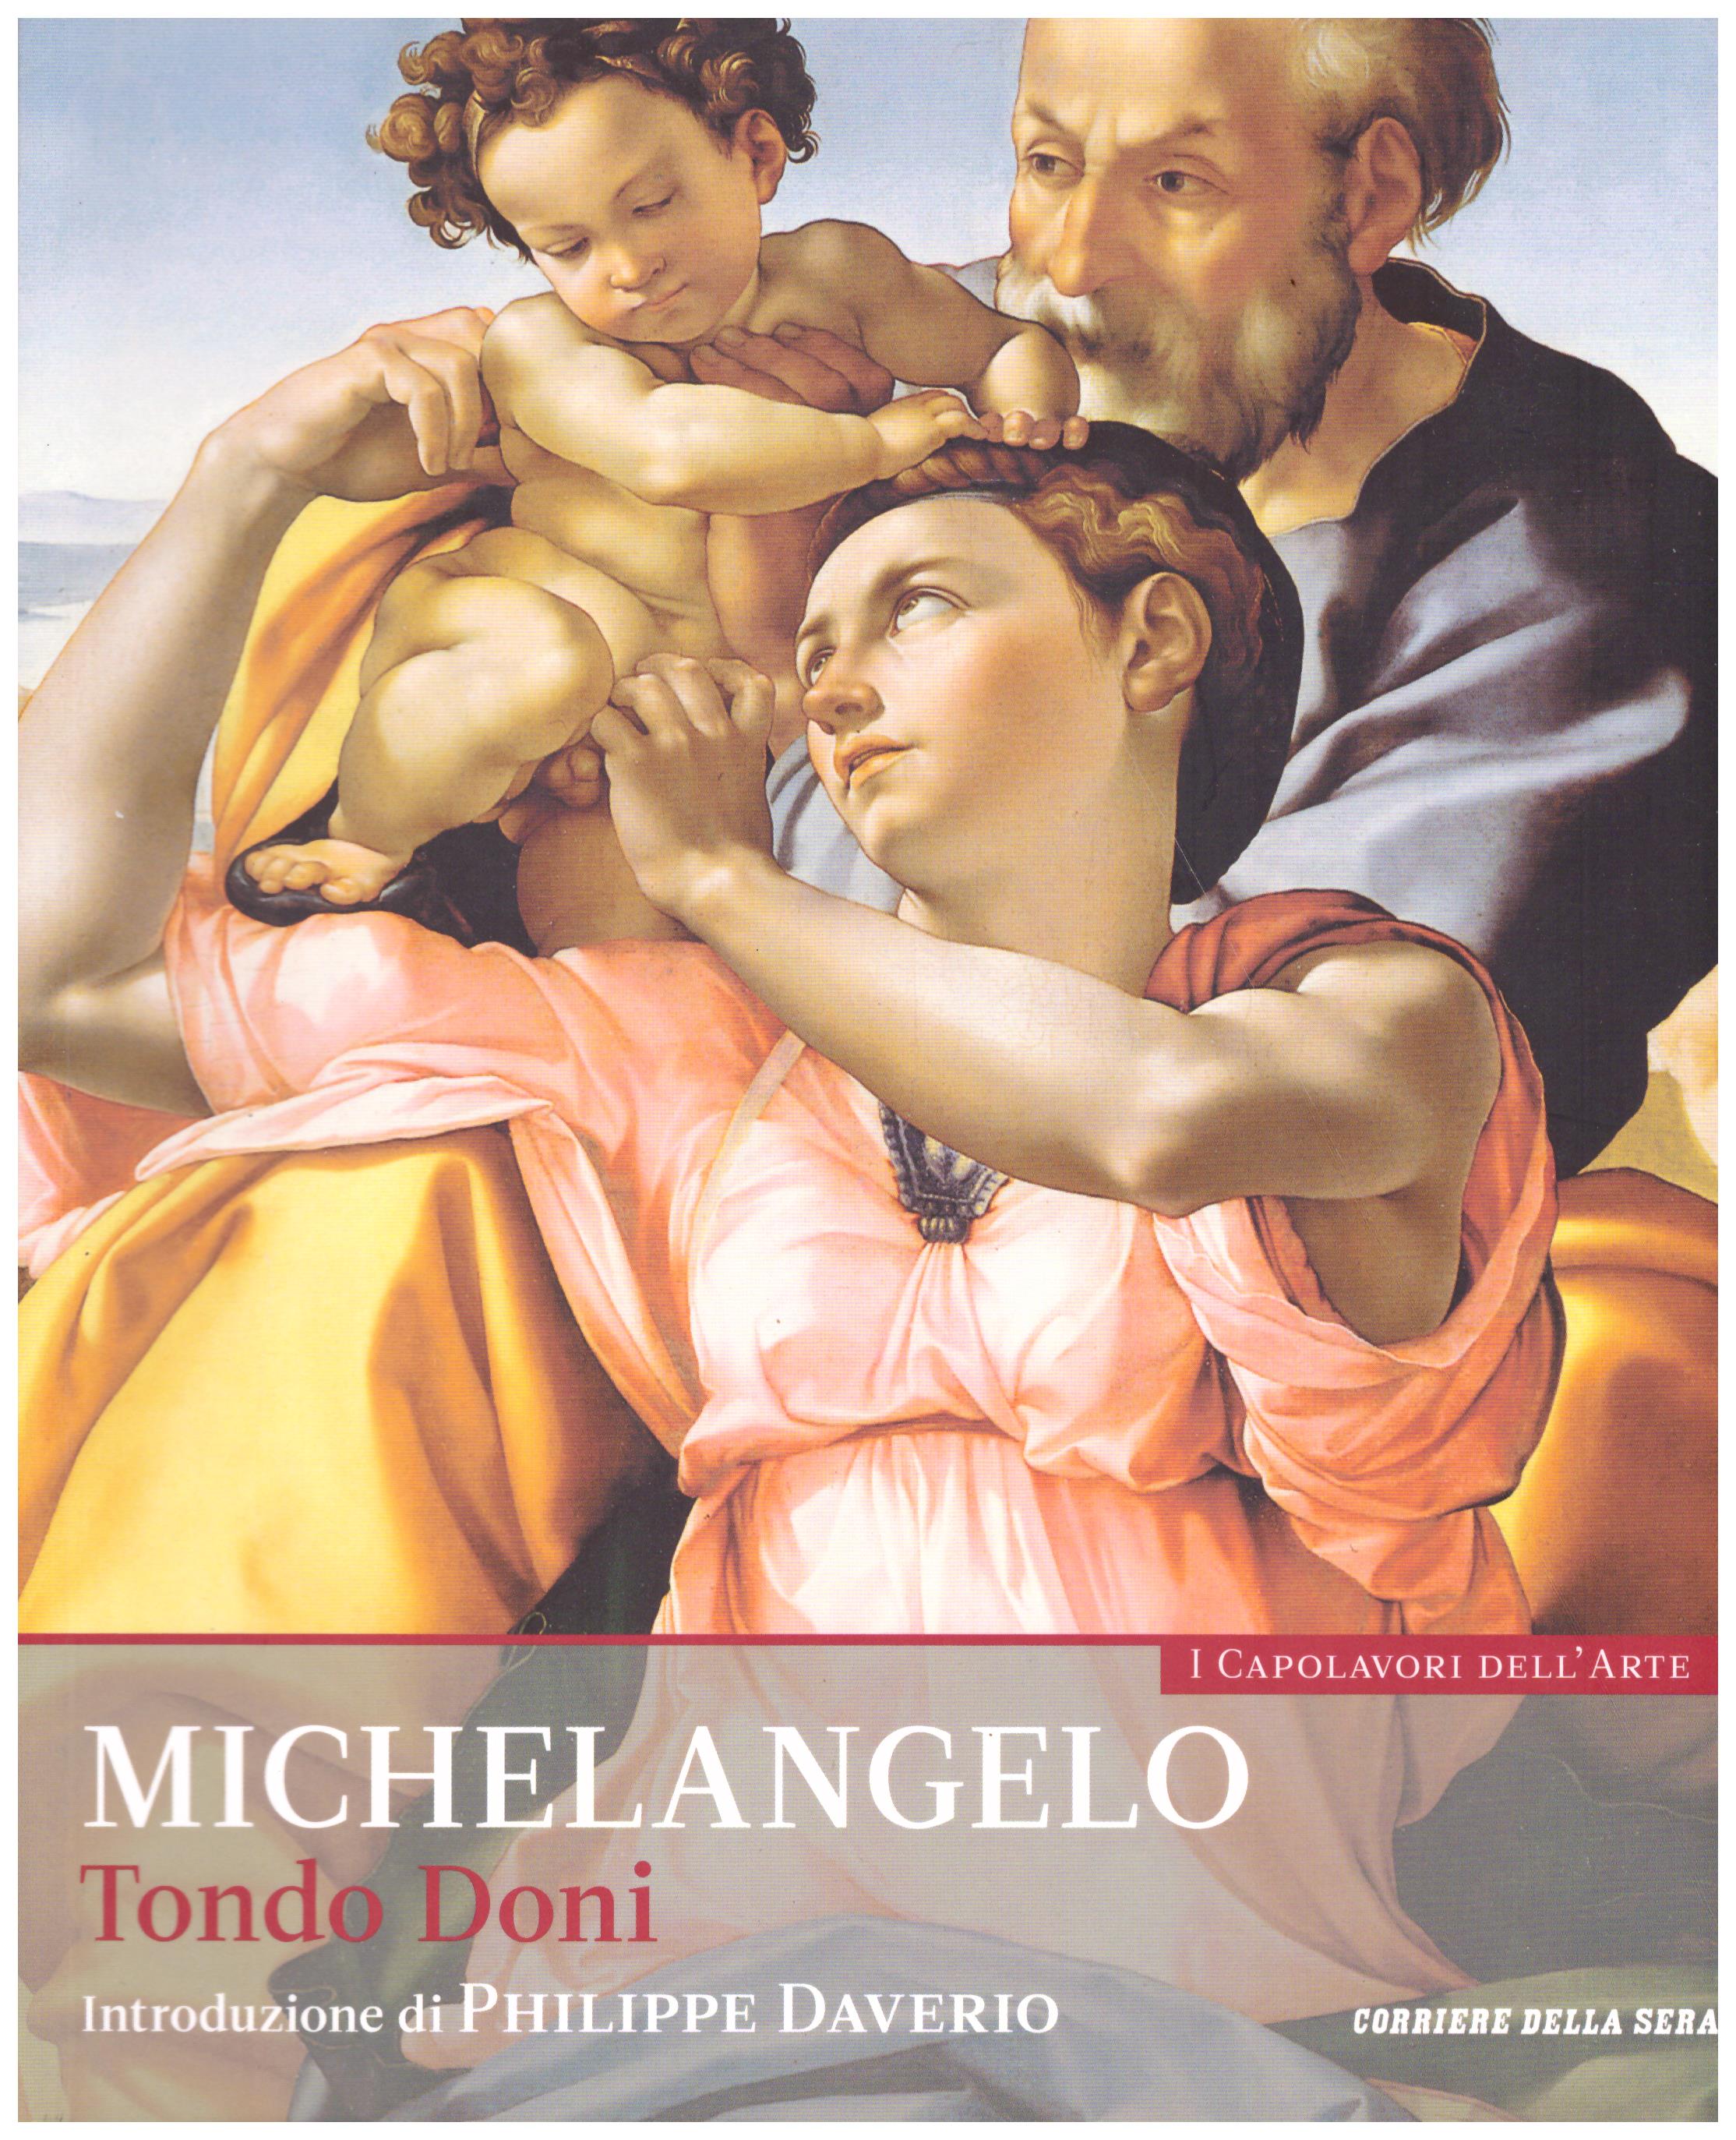 Titolo: I capolavori dell'arte, Michelangelo n.4  Autore : AA.VV.   Editore: education,it/corriere della sera, 2015